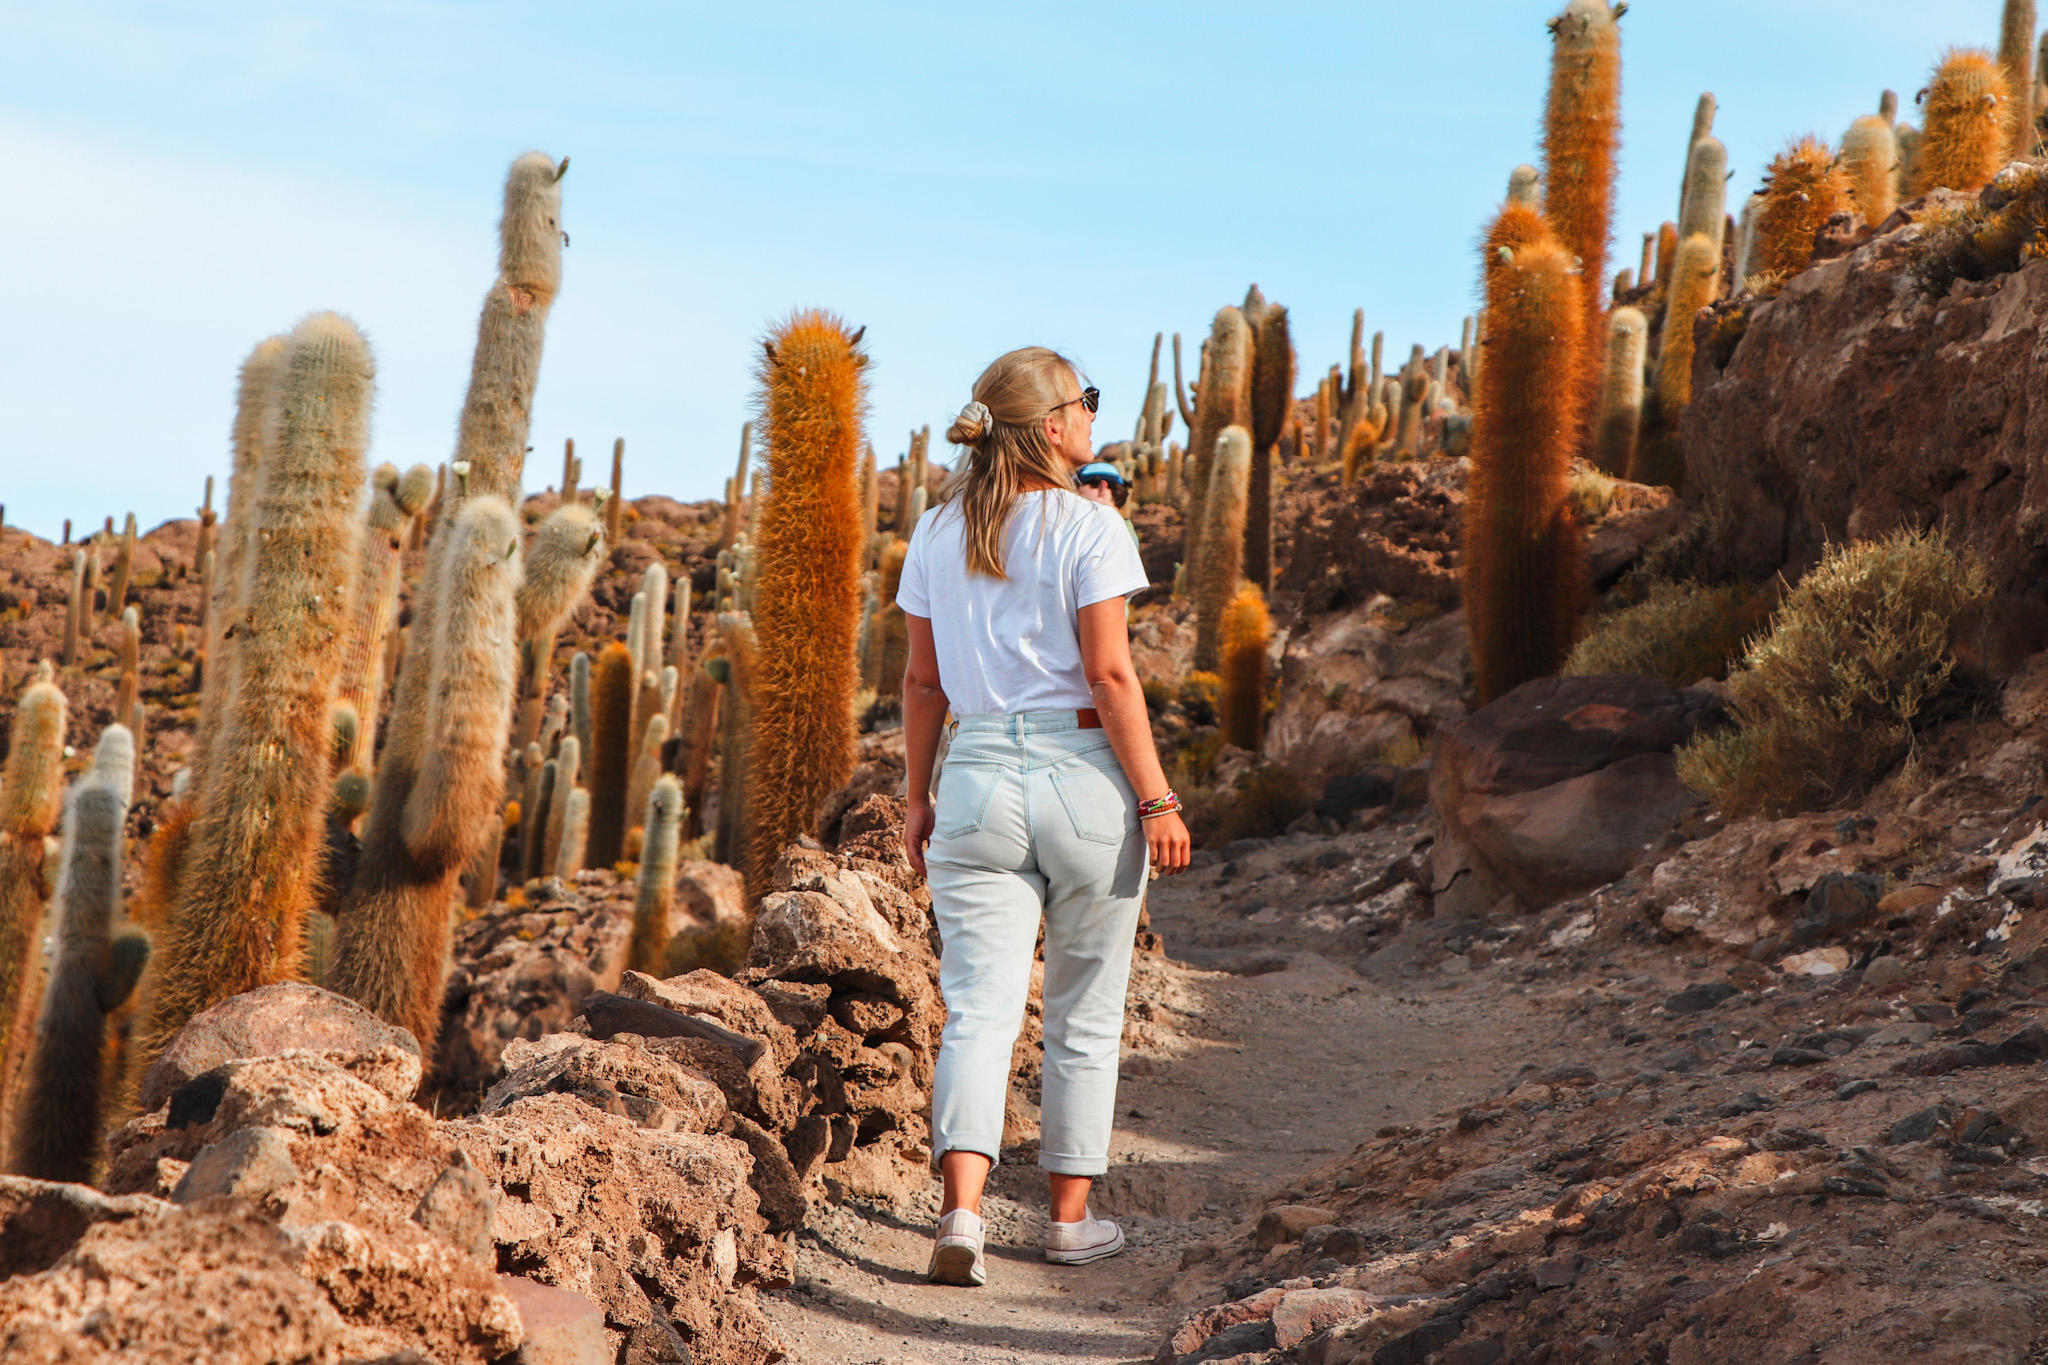 Uyuni Salt Flat Travel Guide: Walking among the giant cacti on Isla Incahuasi